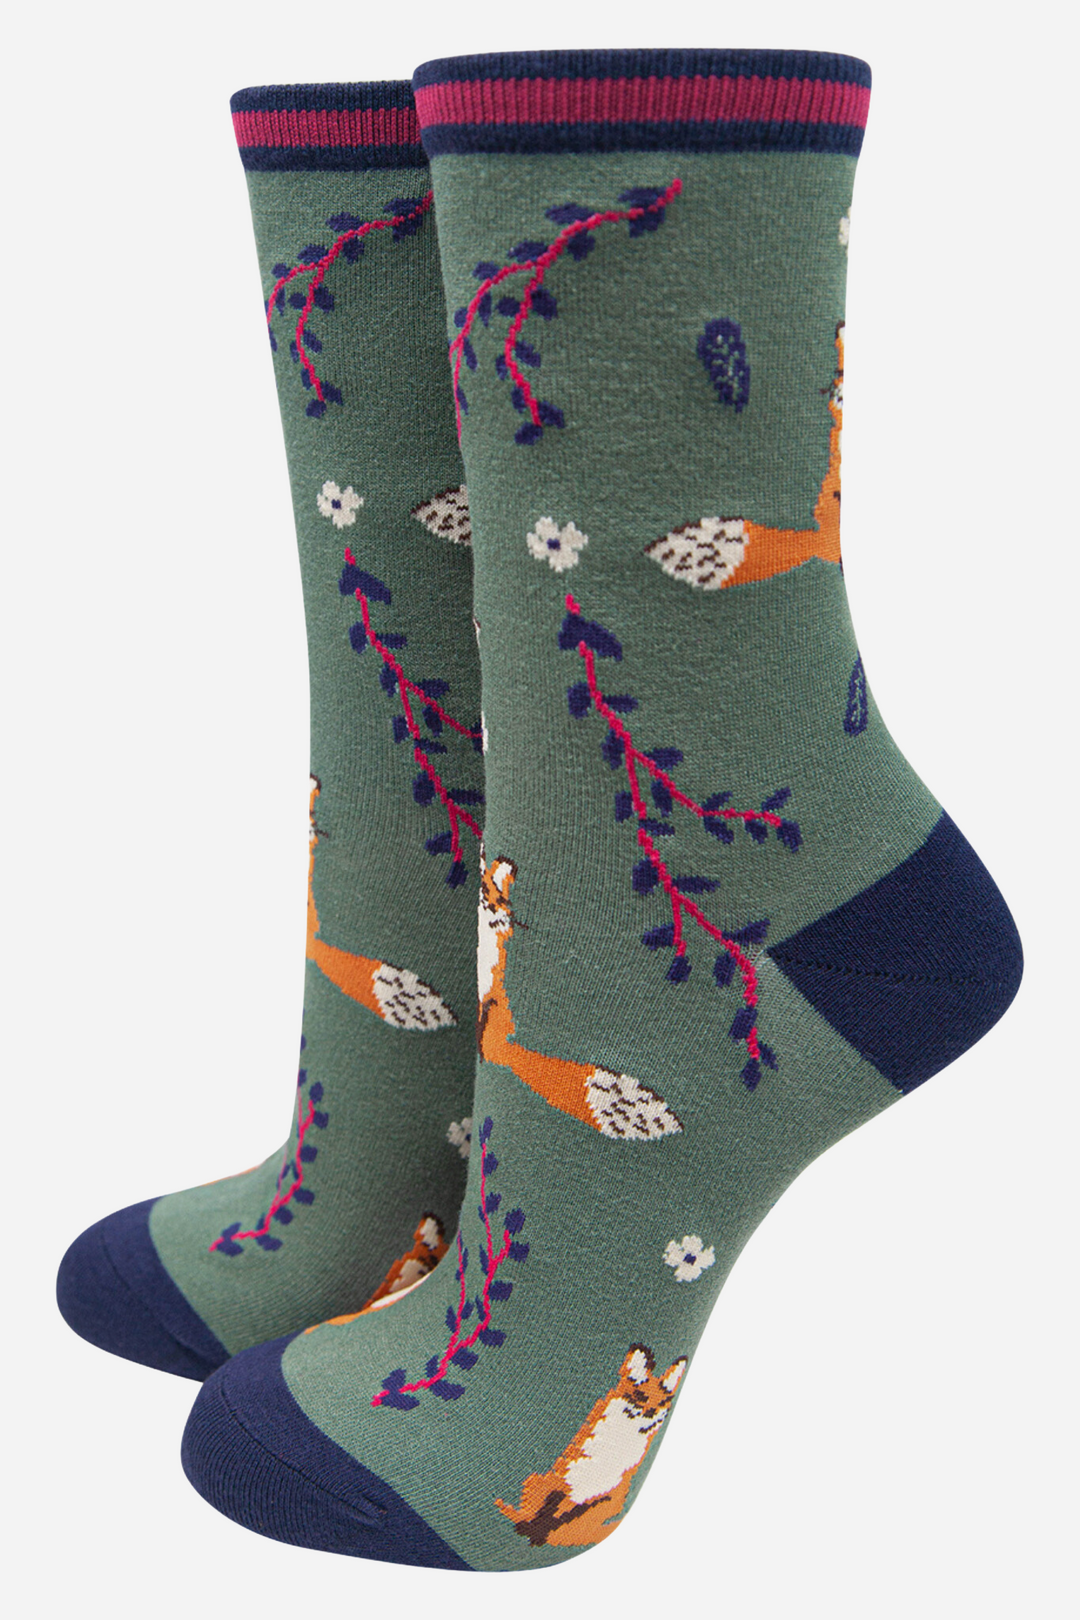 Women's Bamboo Fox Socks Novelty Ankle Socks Leaf Print Green